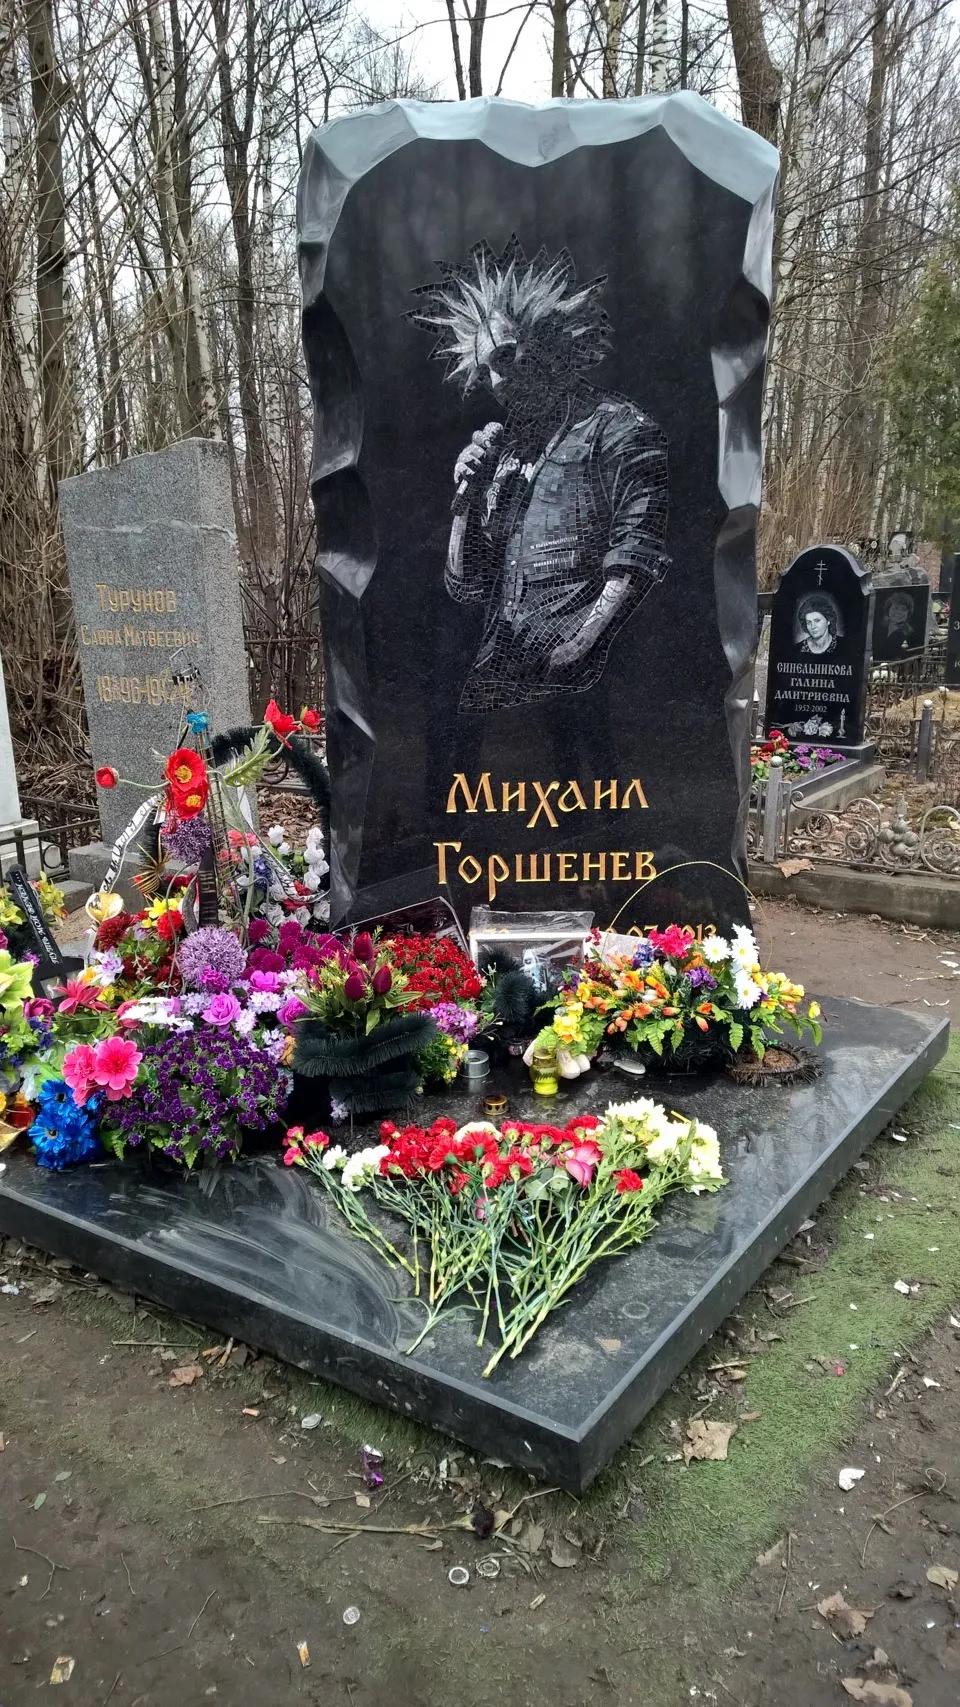 Правда ли что умер король. Богословское кладбище Санкт-Петербург Горшенев. Мижаид горленёв магила. Горшок Король и Шут могила.